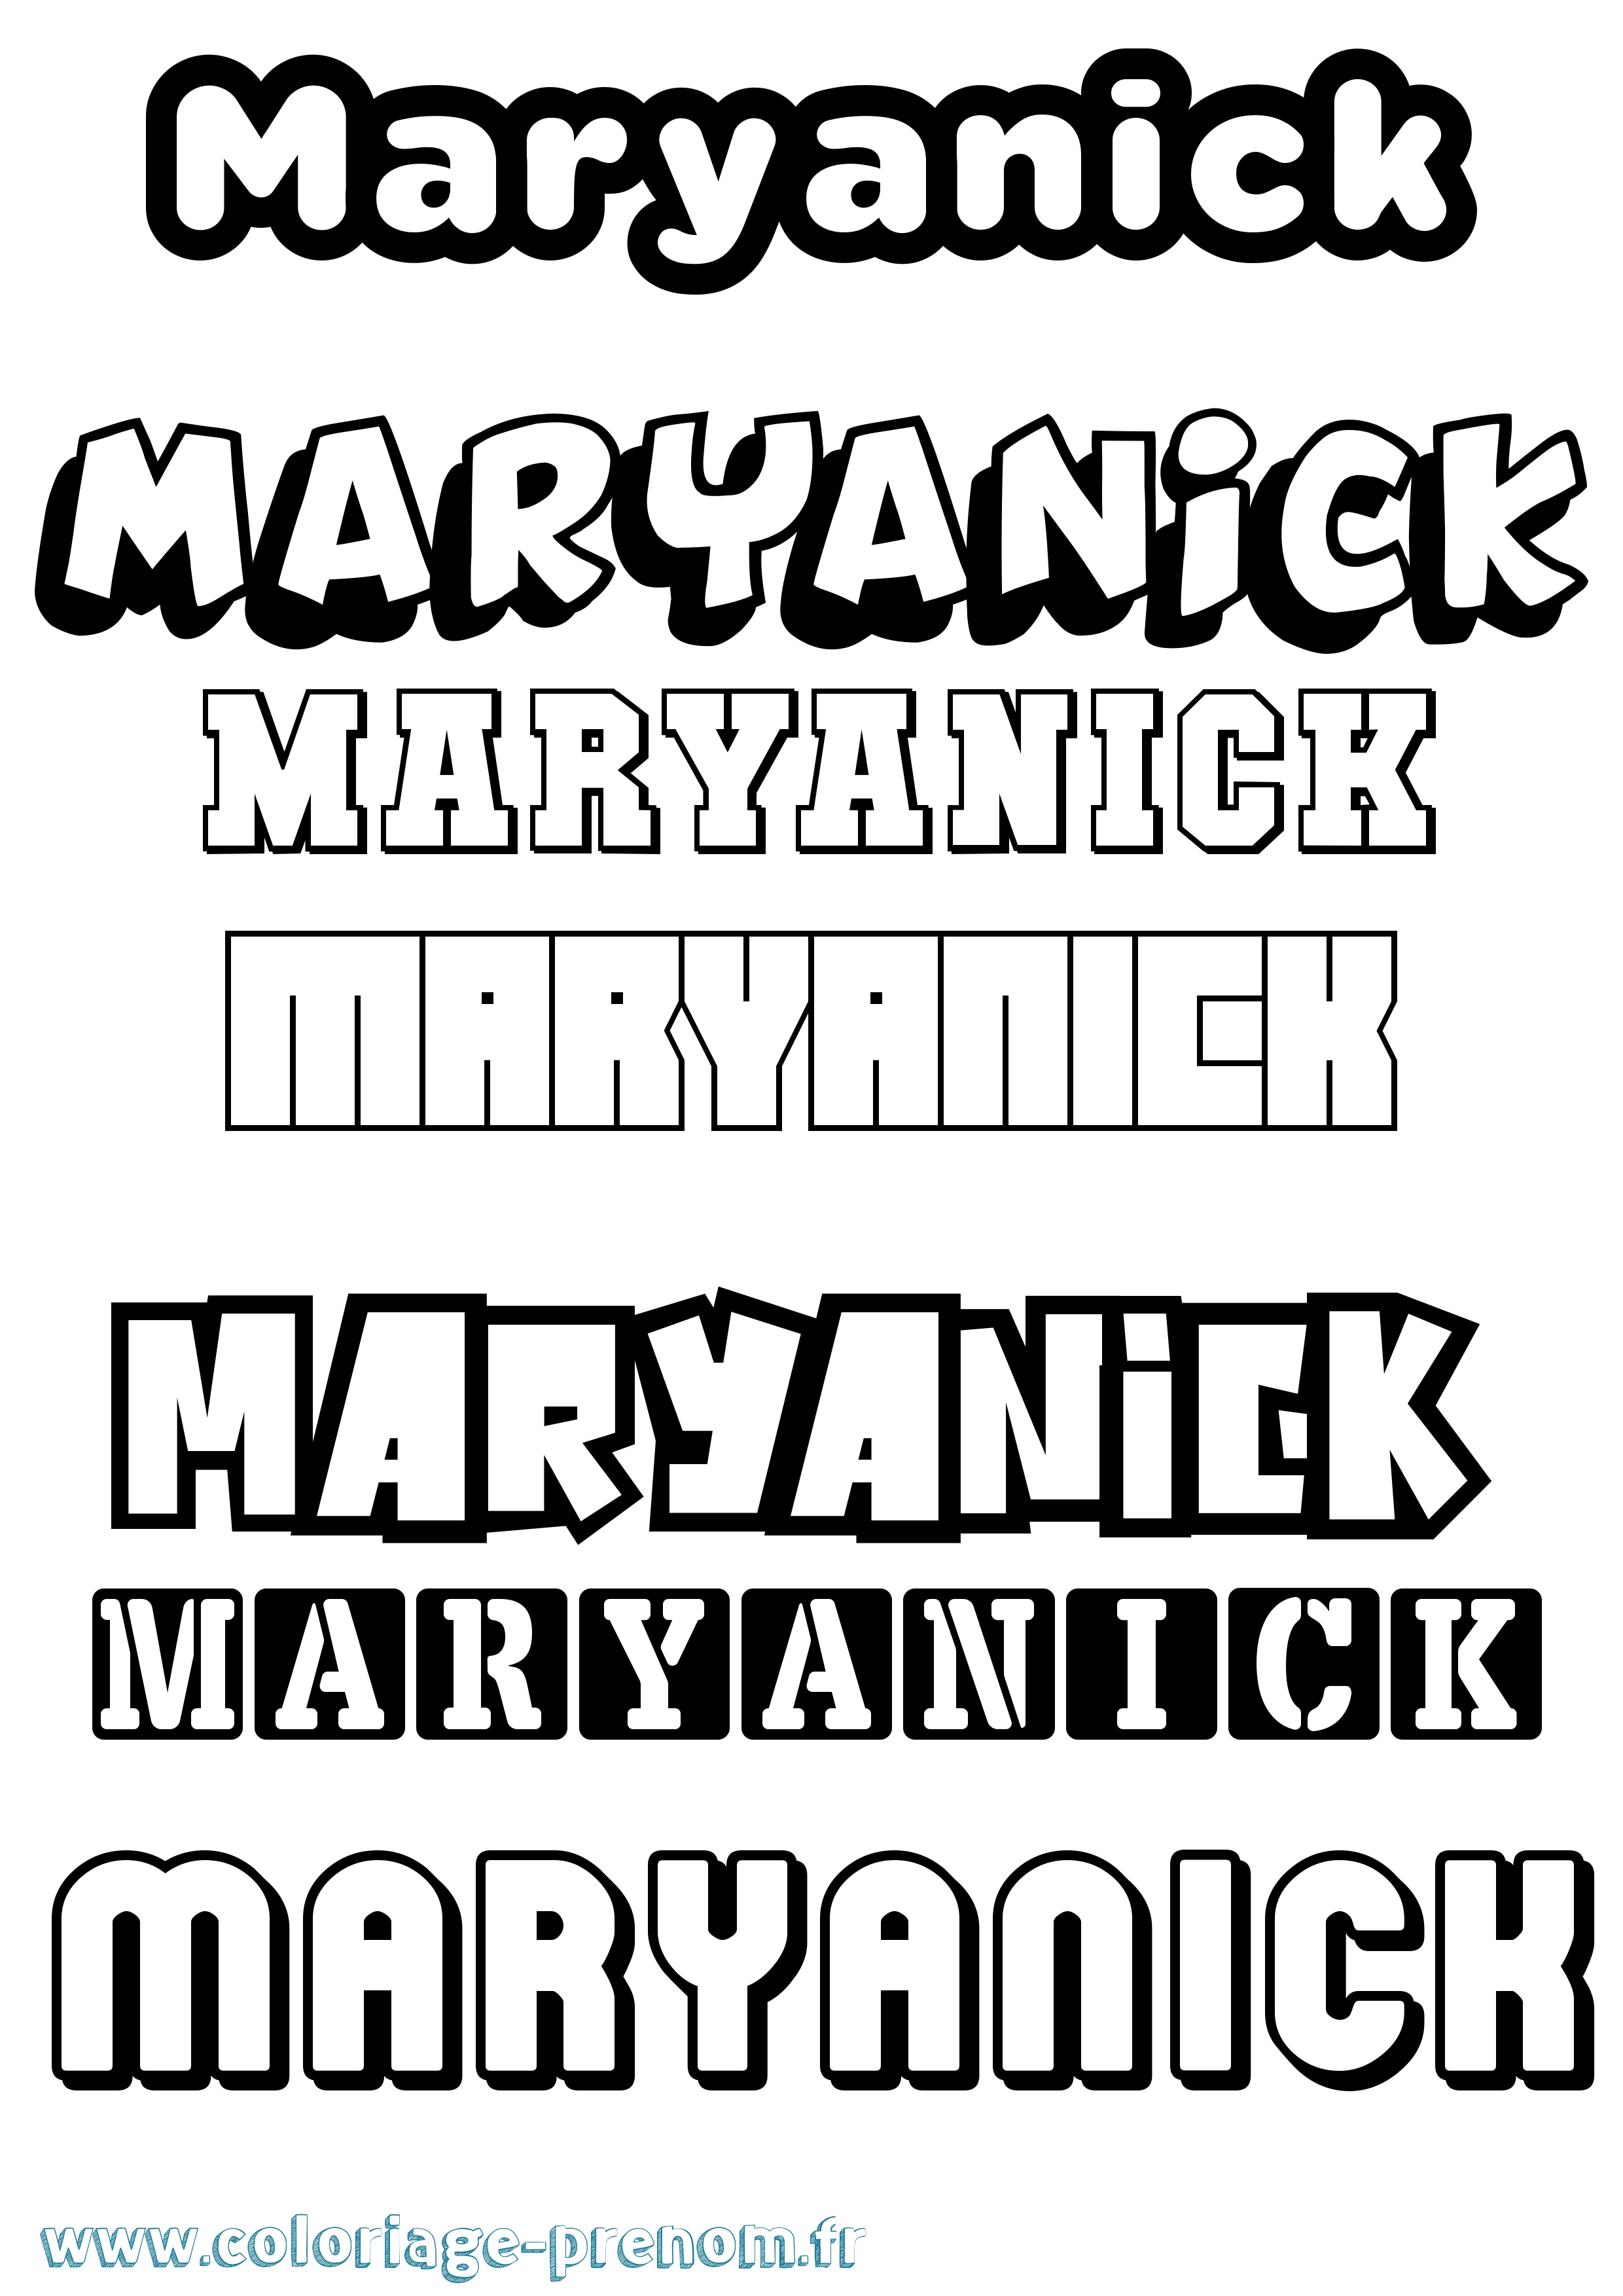 Coloriage prénom Maryanick Simple